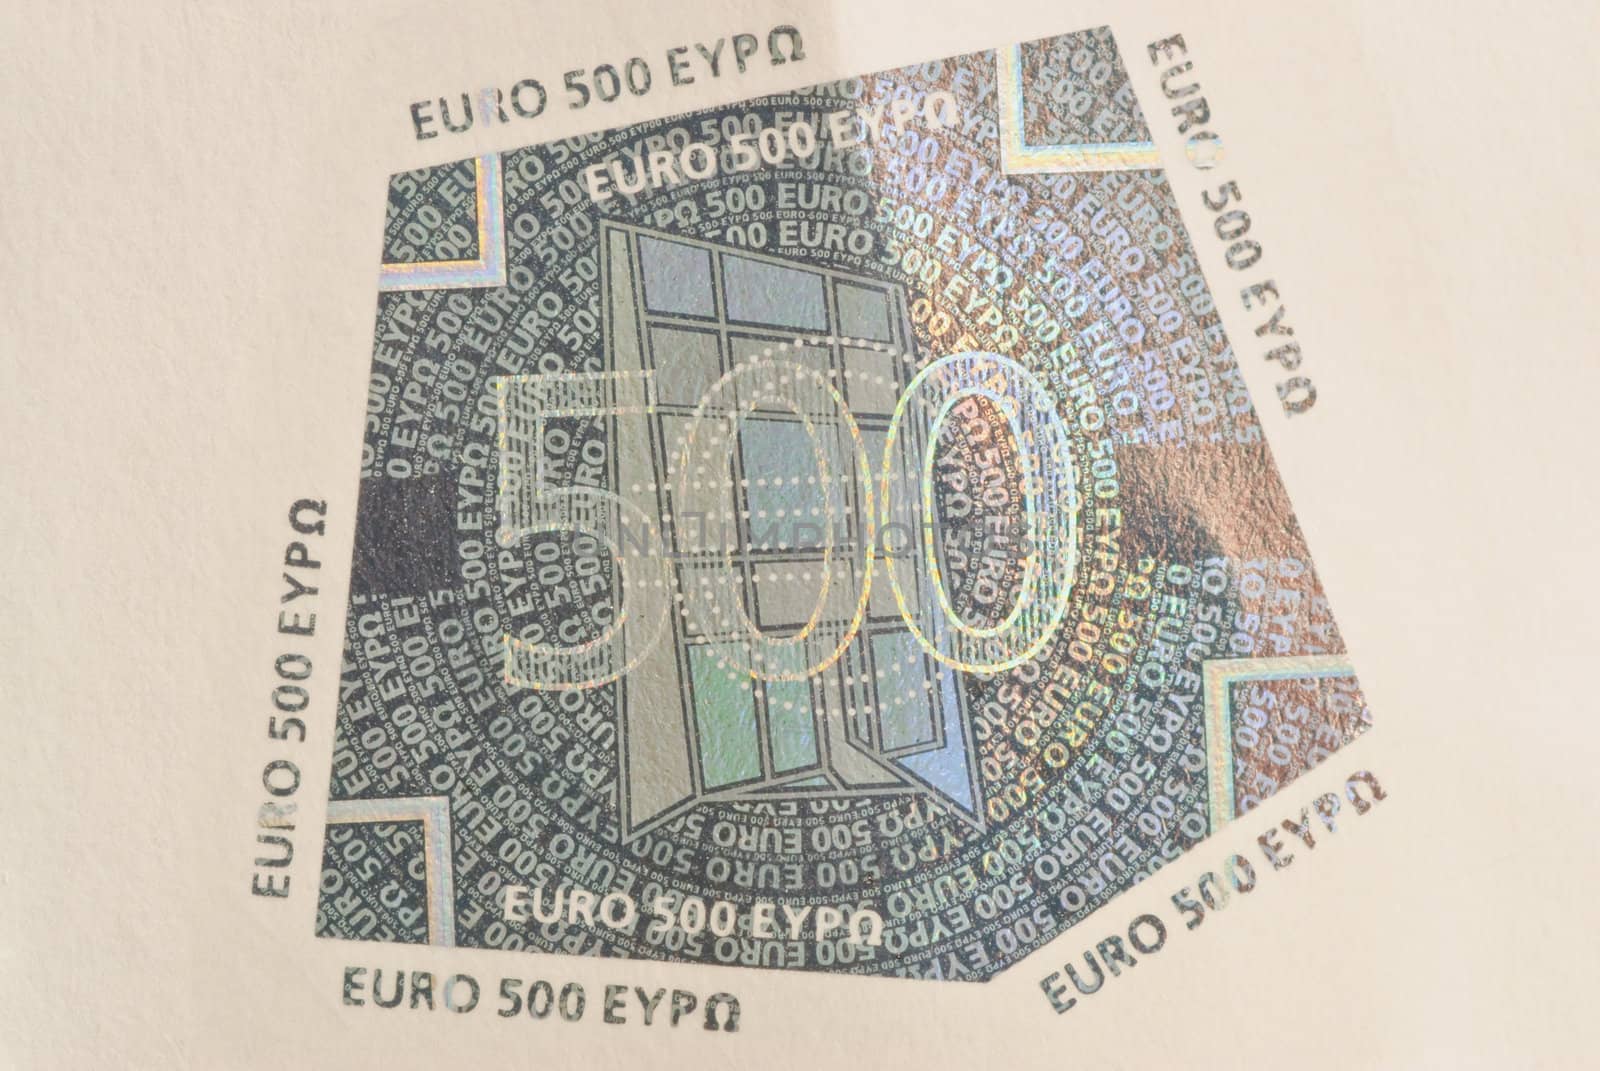 Hologram - foil, laminated on banknotes